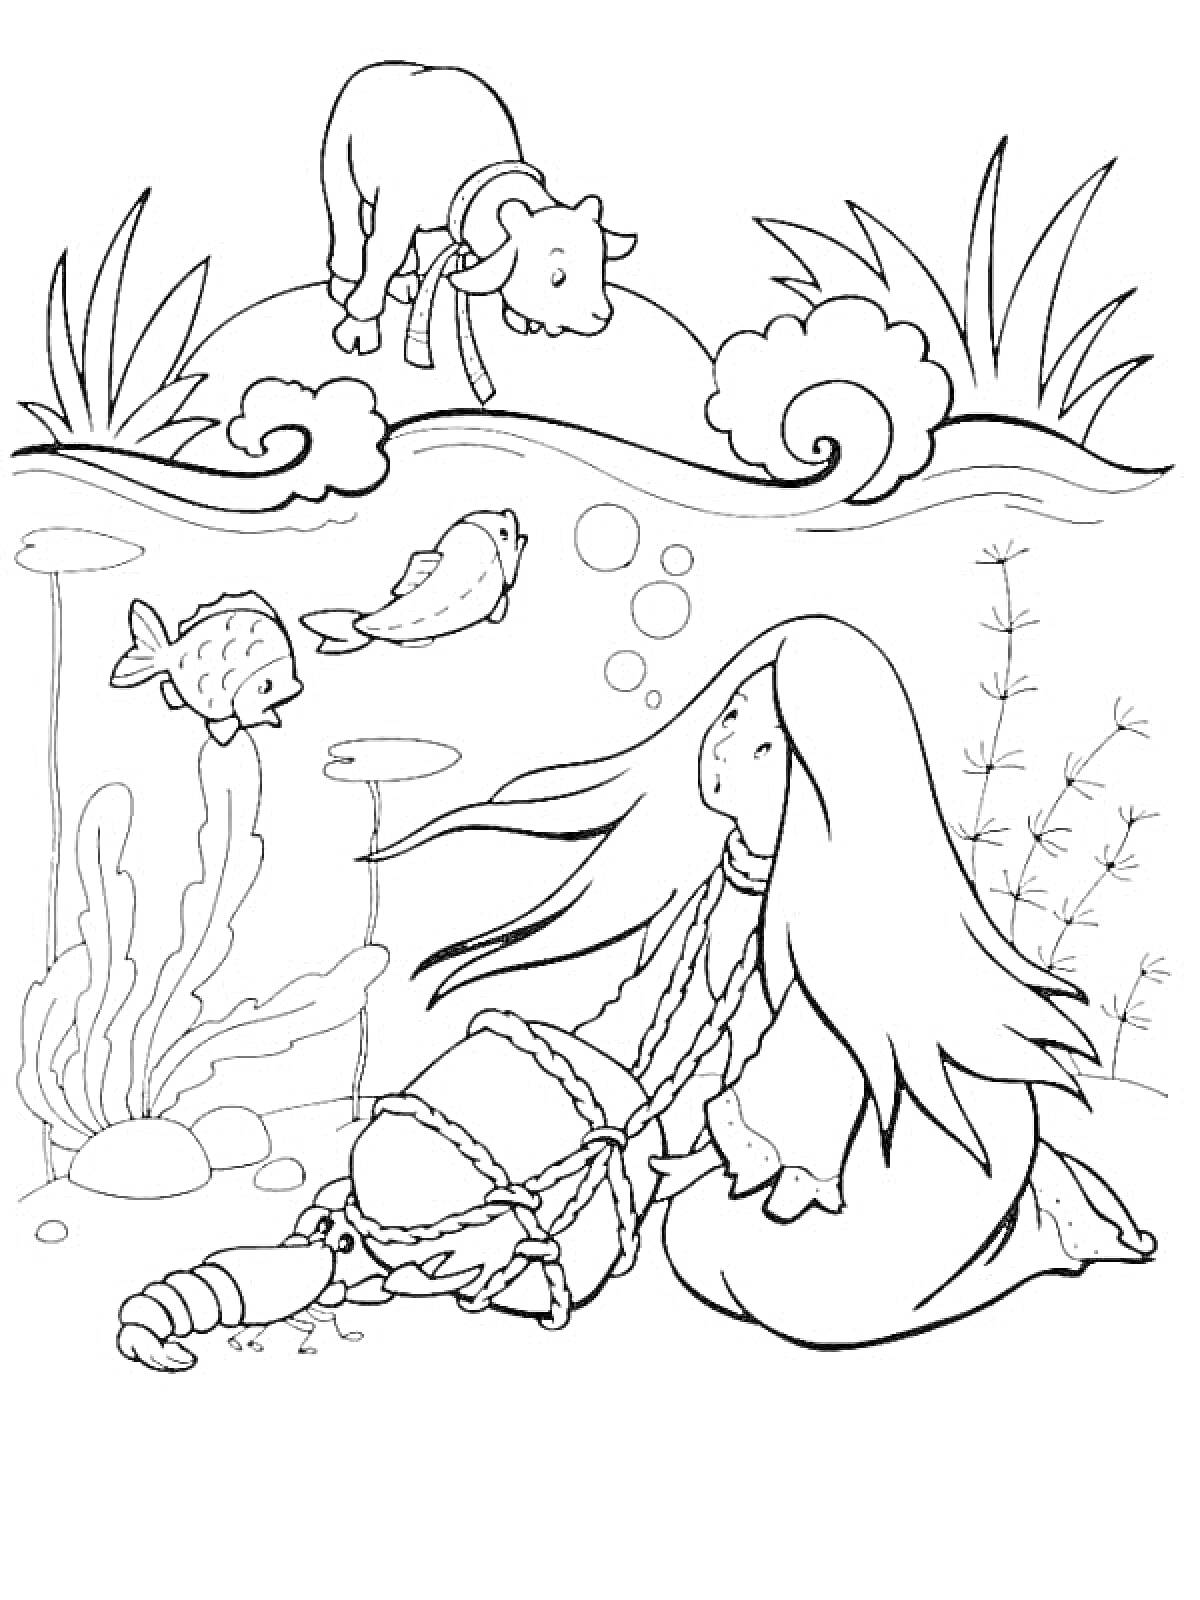 Раскраска Аленушка в воде, Иванушка-козленок на берегу, рыбы под водой